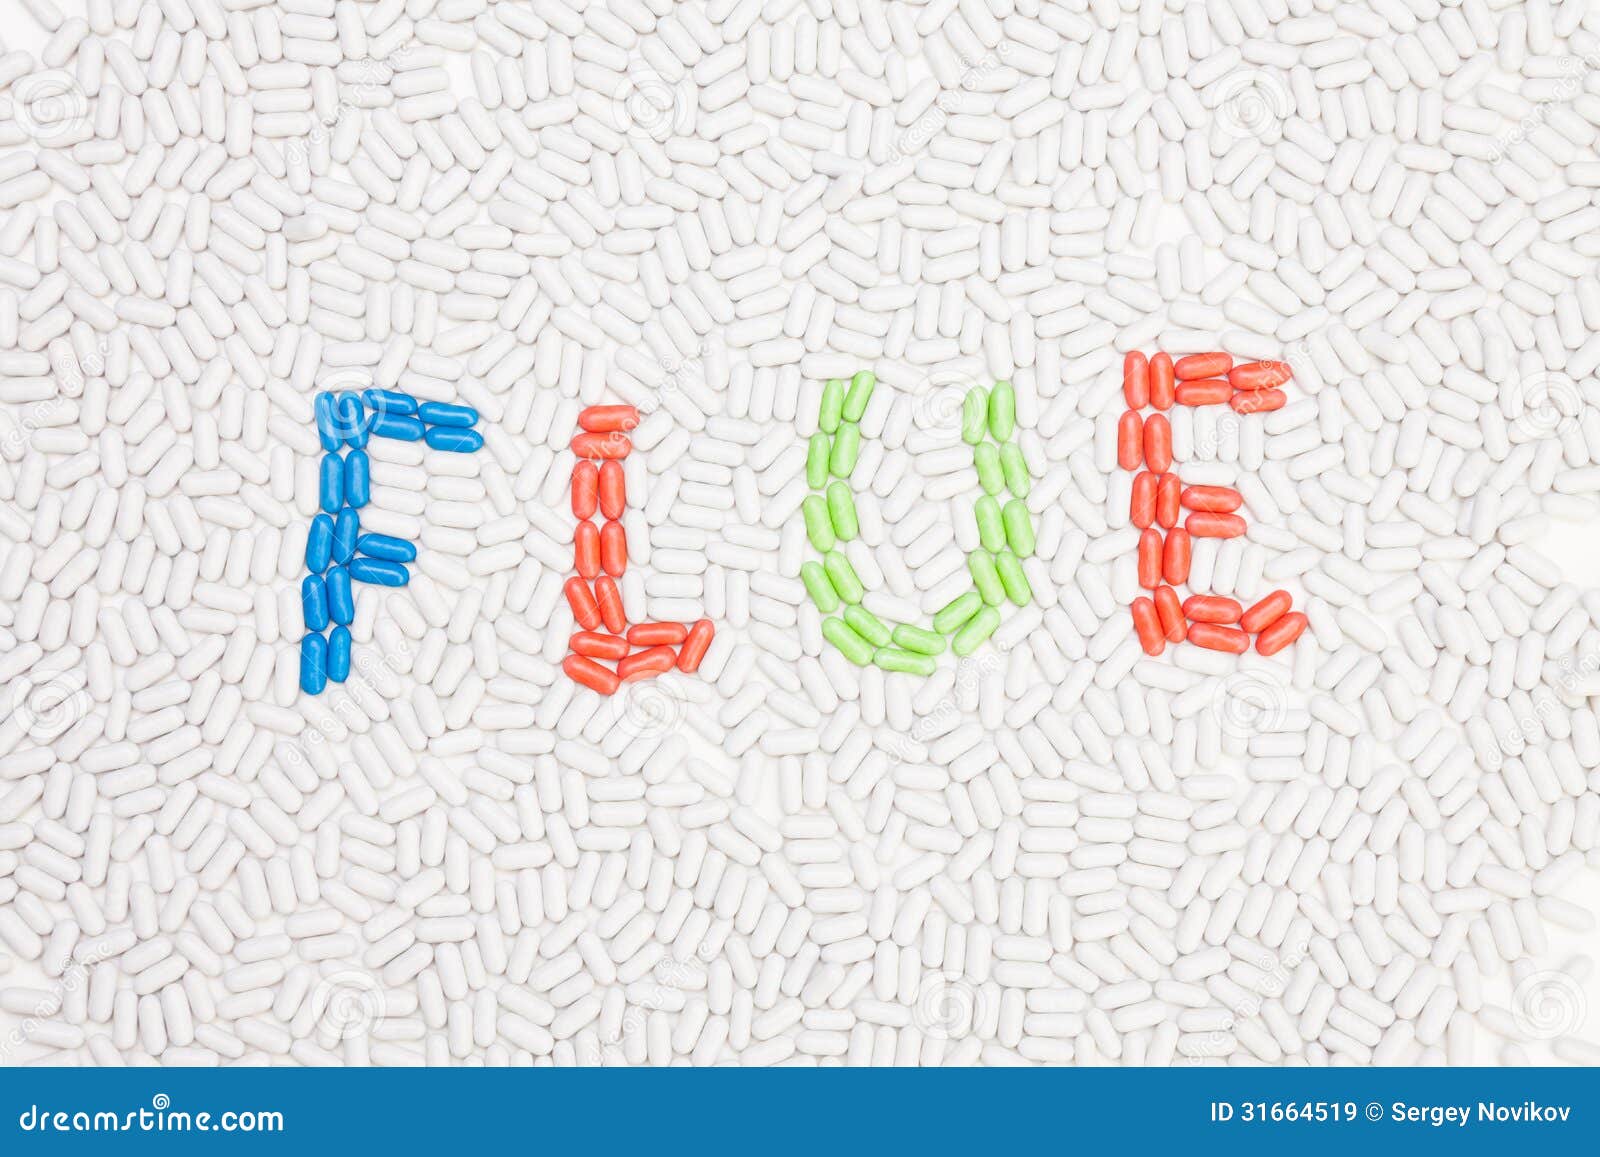 flue text made of pills